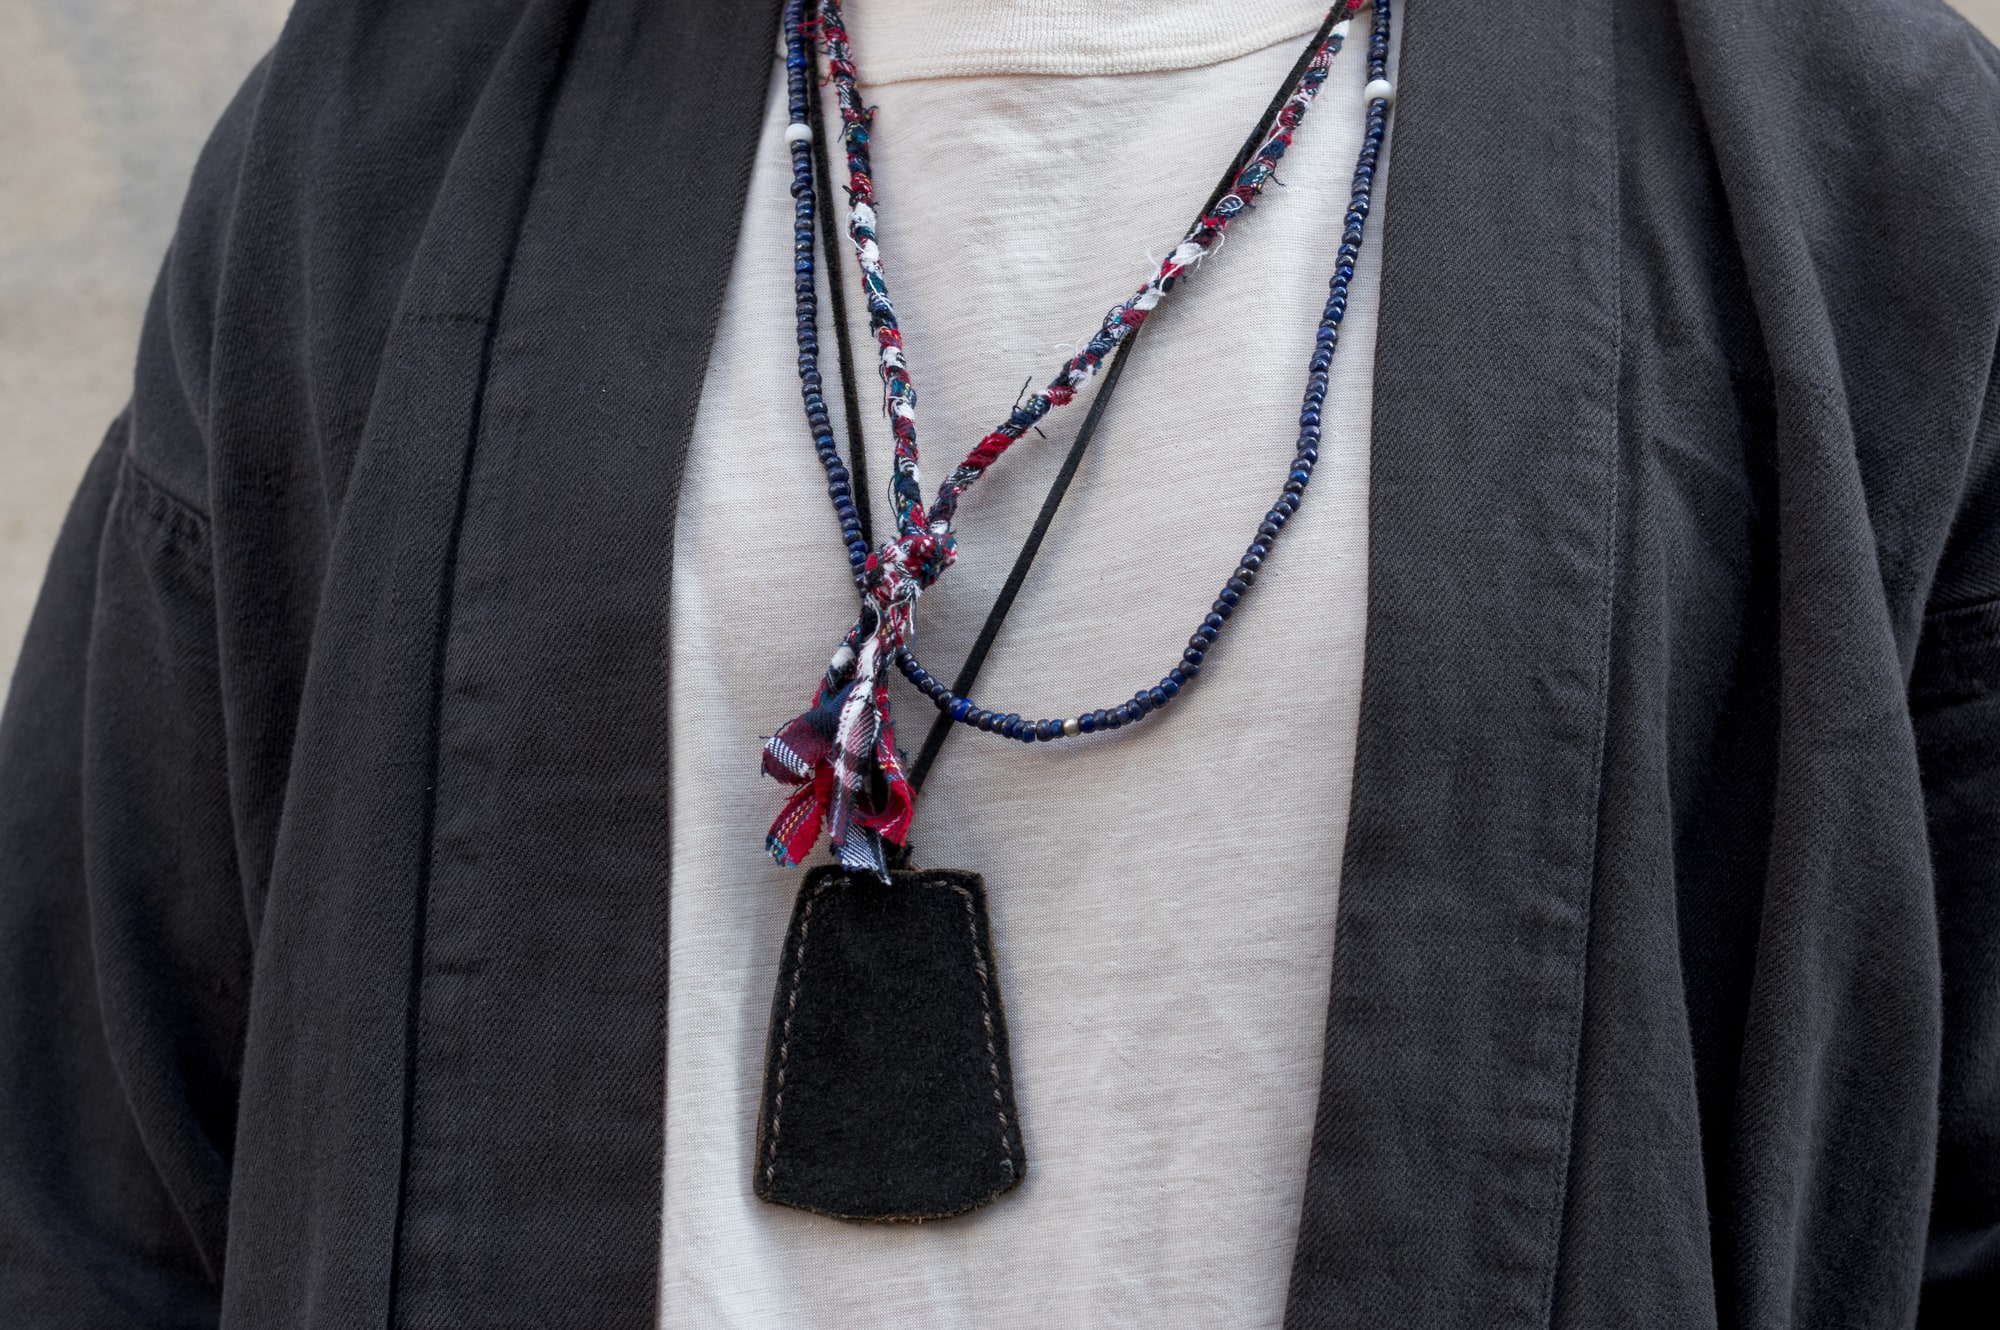 Idée de tenues pour homme avec collier en tissus tressés Borali made in France fait à la main